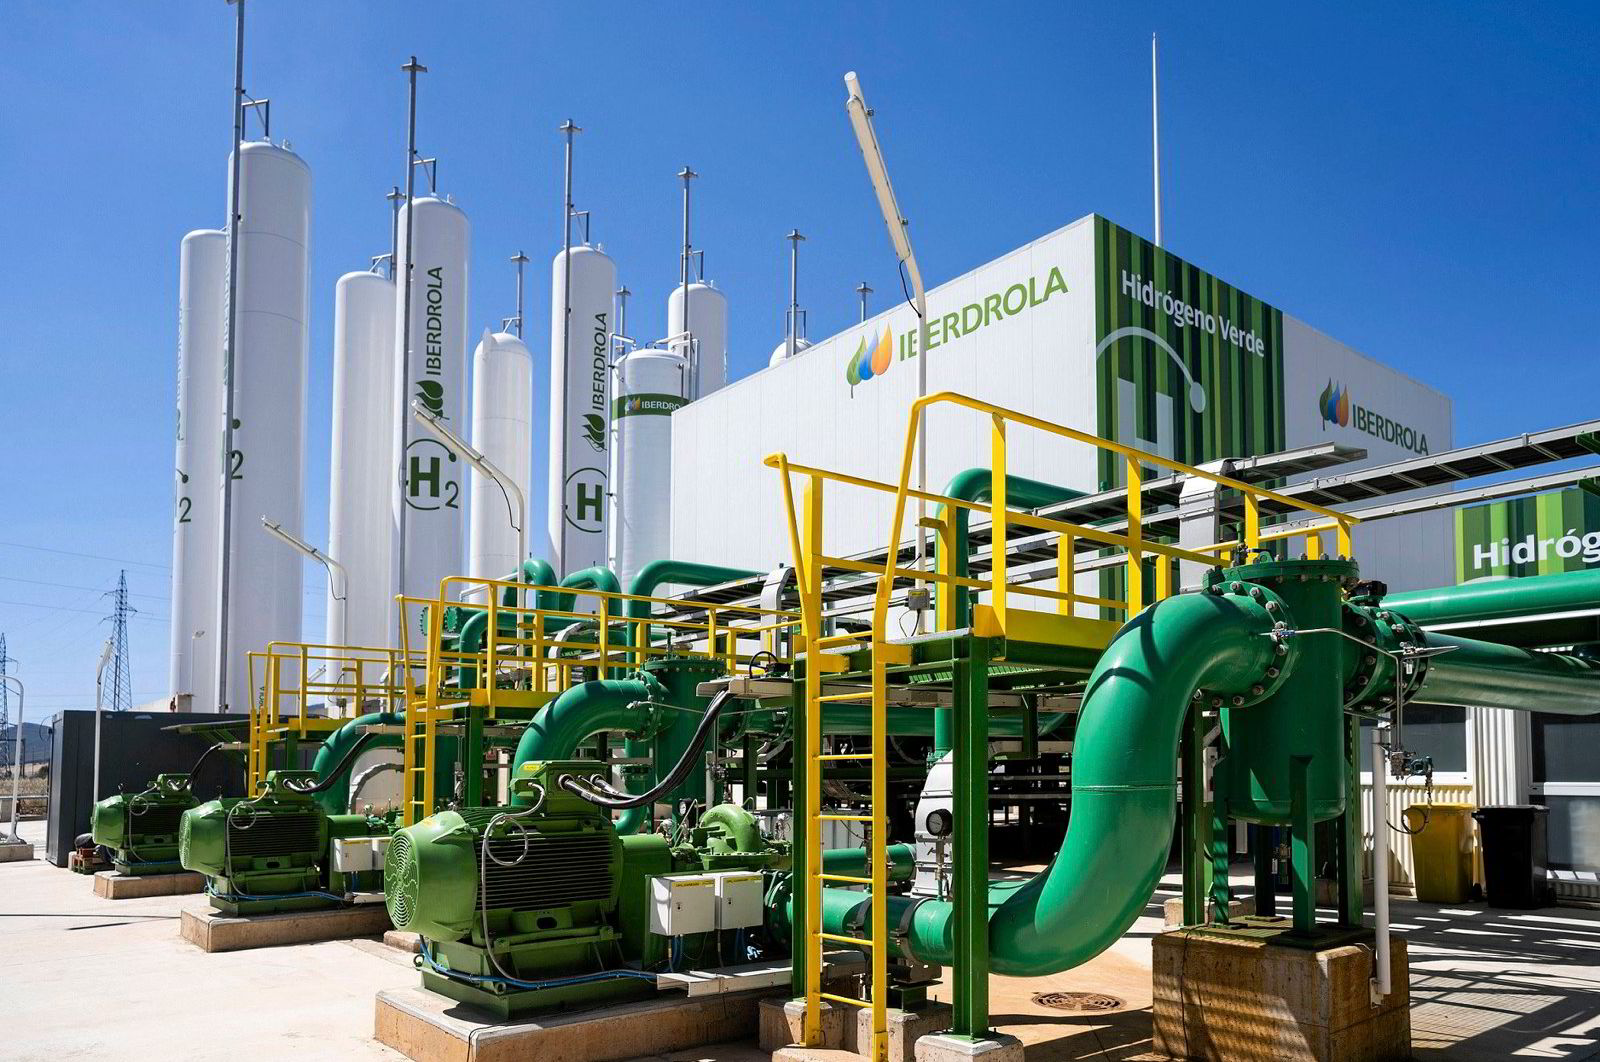 محطة هيدروجين أخضر تابعة لشركة إيبردرولا في إسبانيا